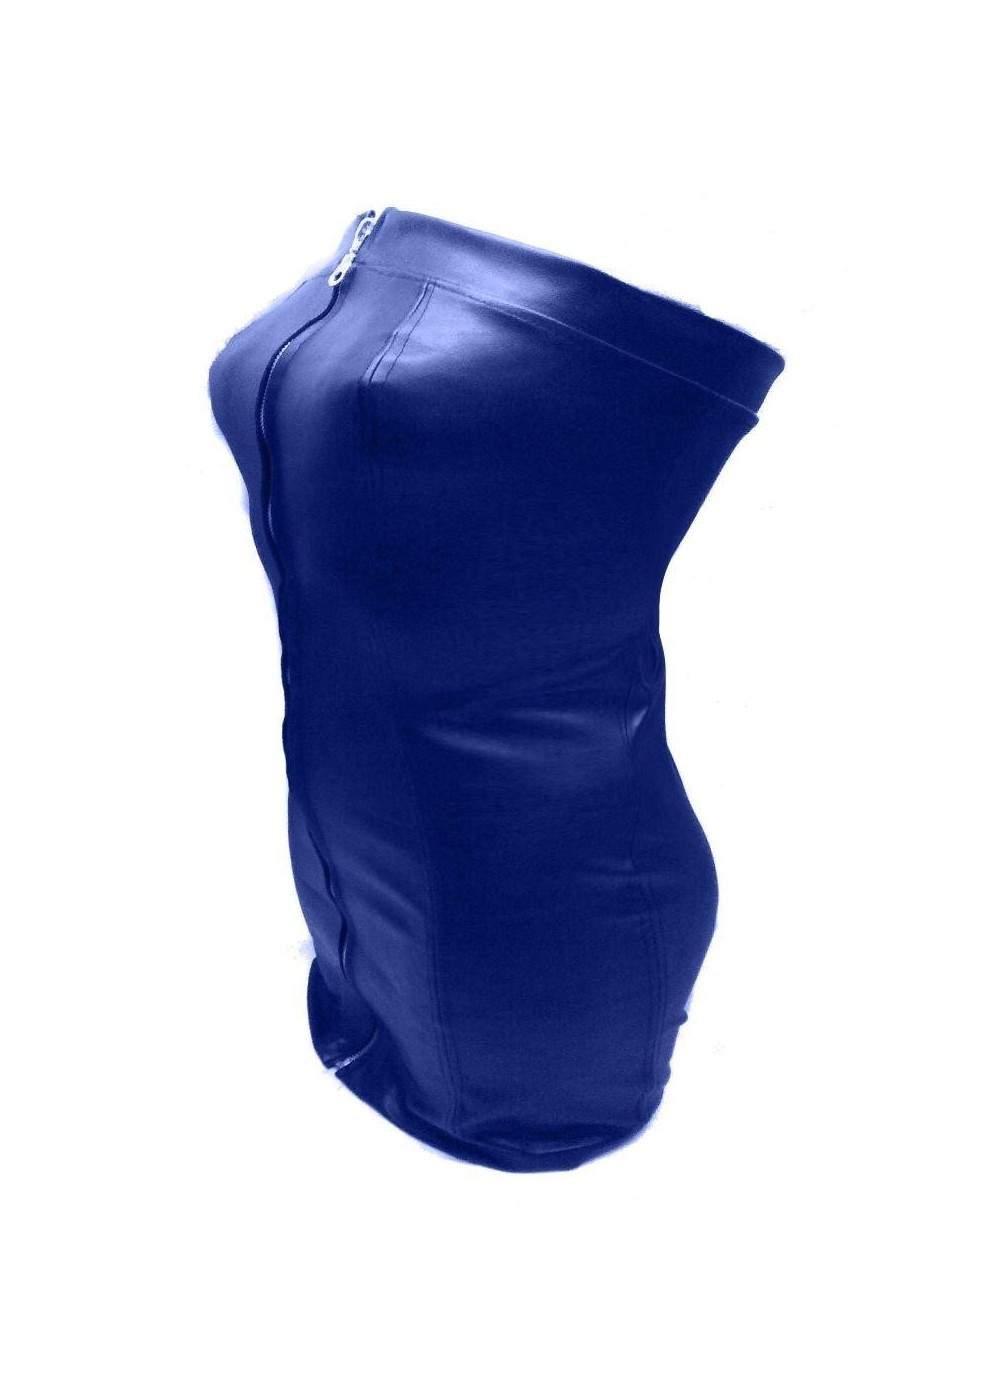 Sehr weiches Leder Kleid blau - 